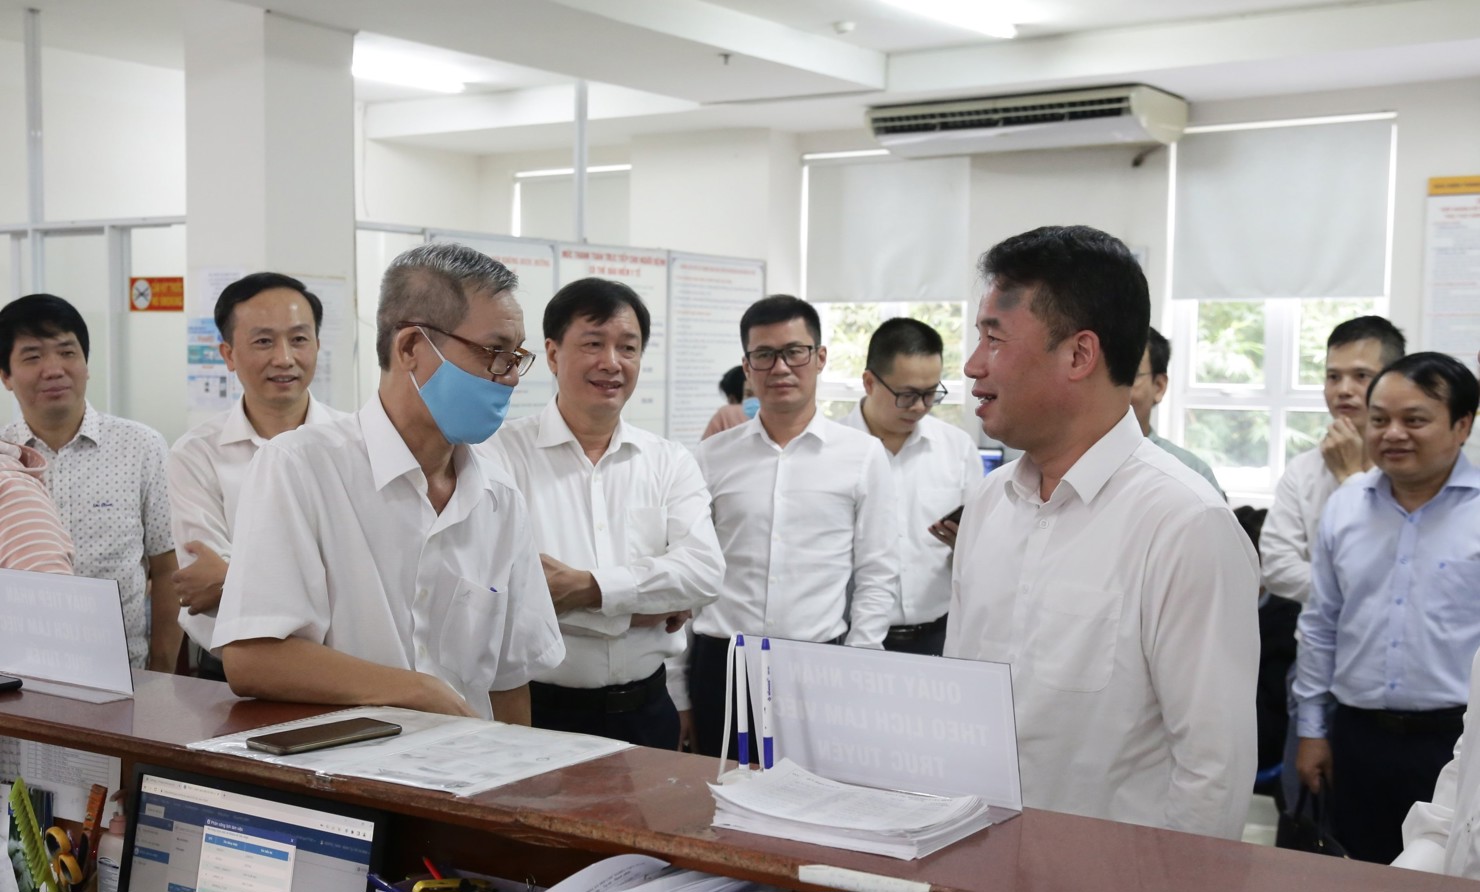 Tổng Giám đốc BHXH Việt Nam Nguyễn Thế Mạnh trao đổi với người dân đến làm việc qua tính năng đặt lịch làm việc trực tuyến tại bộ phận "Một cửa" BHXH TP. Hồ Chí Minh.